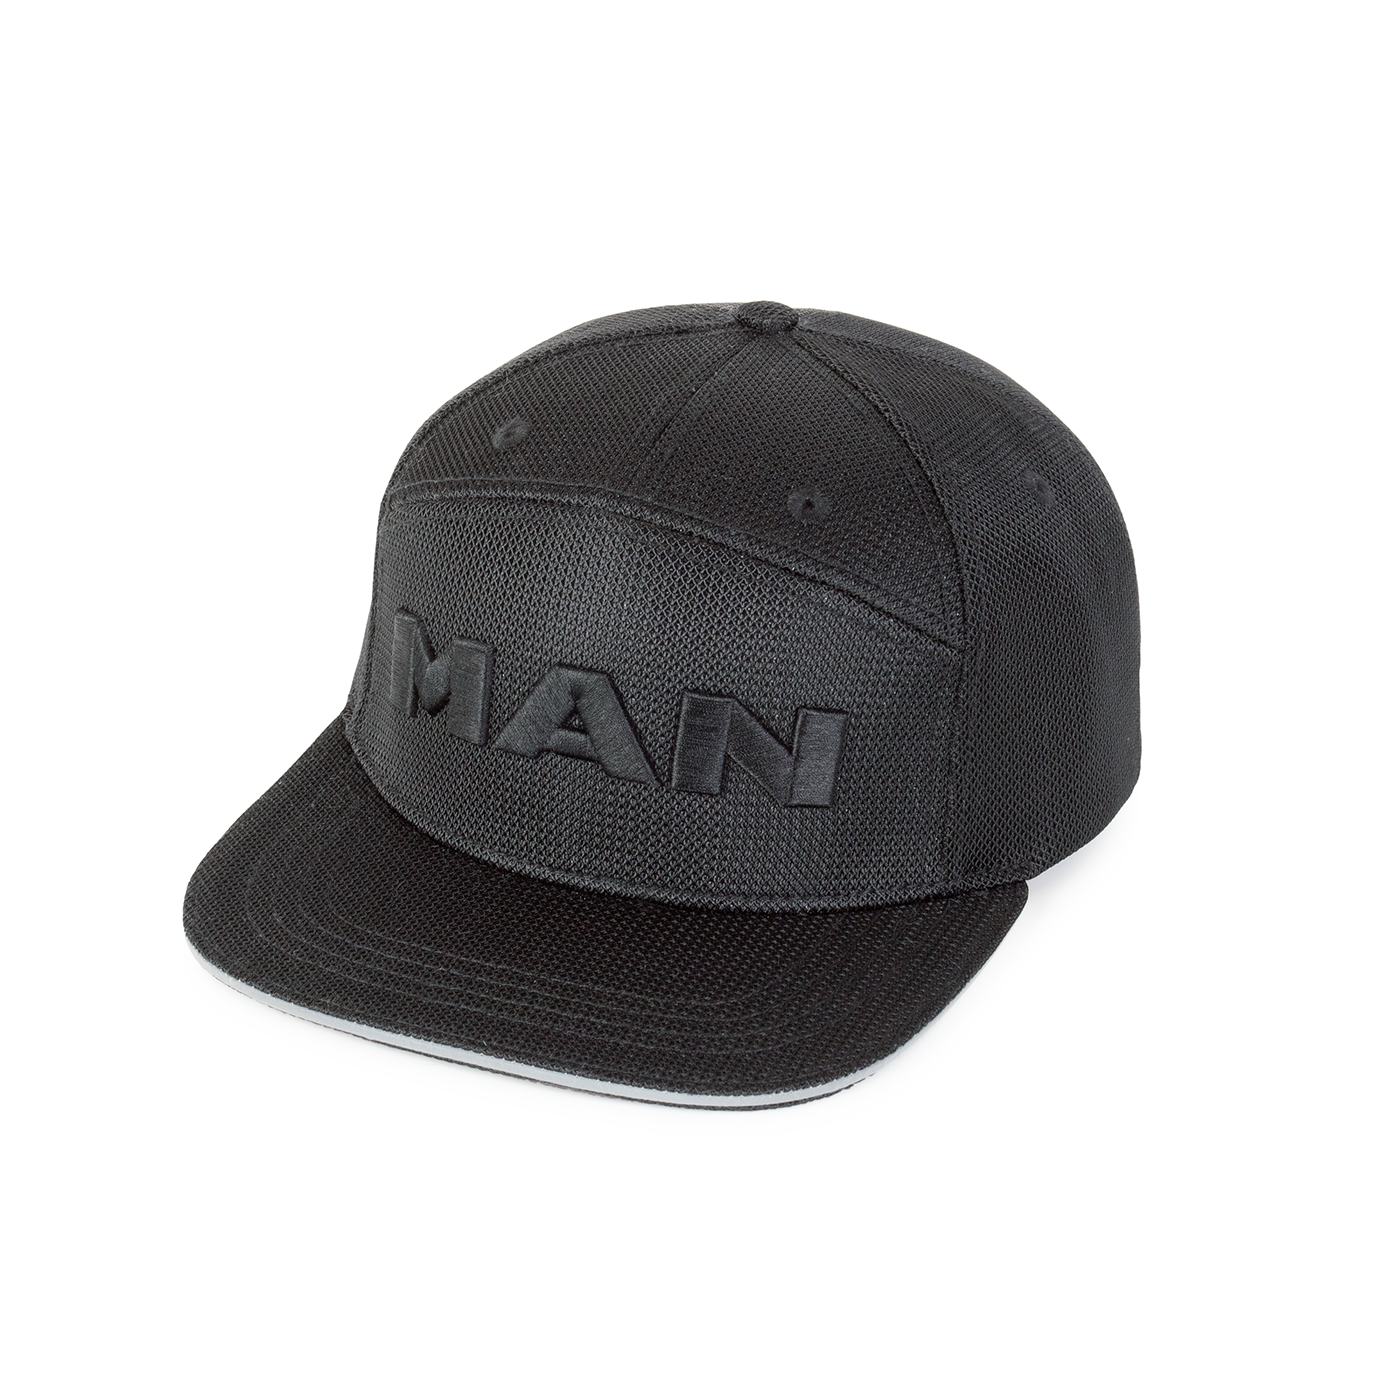 MAN Black Edition Unisex Mesh Cap